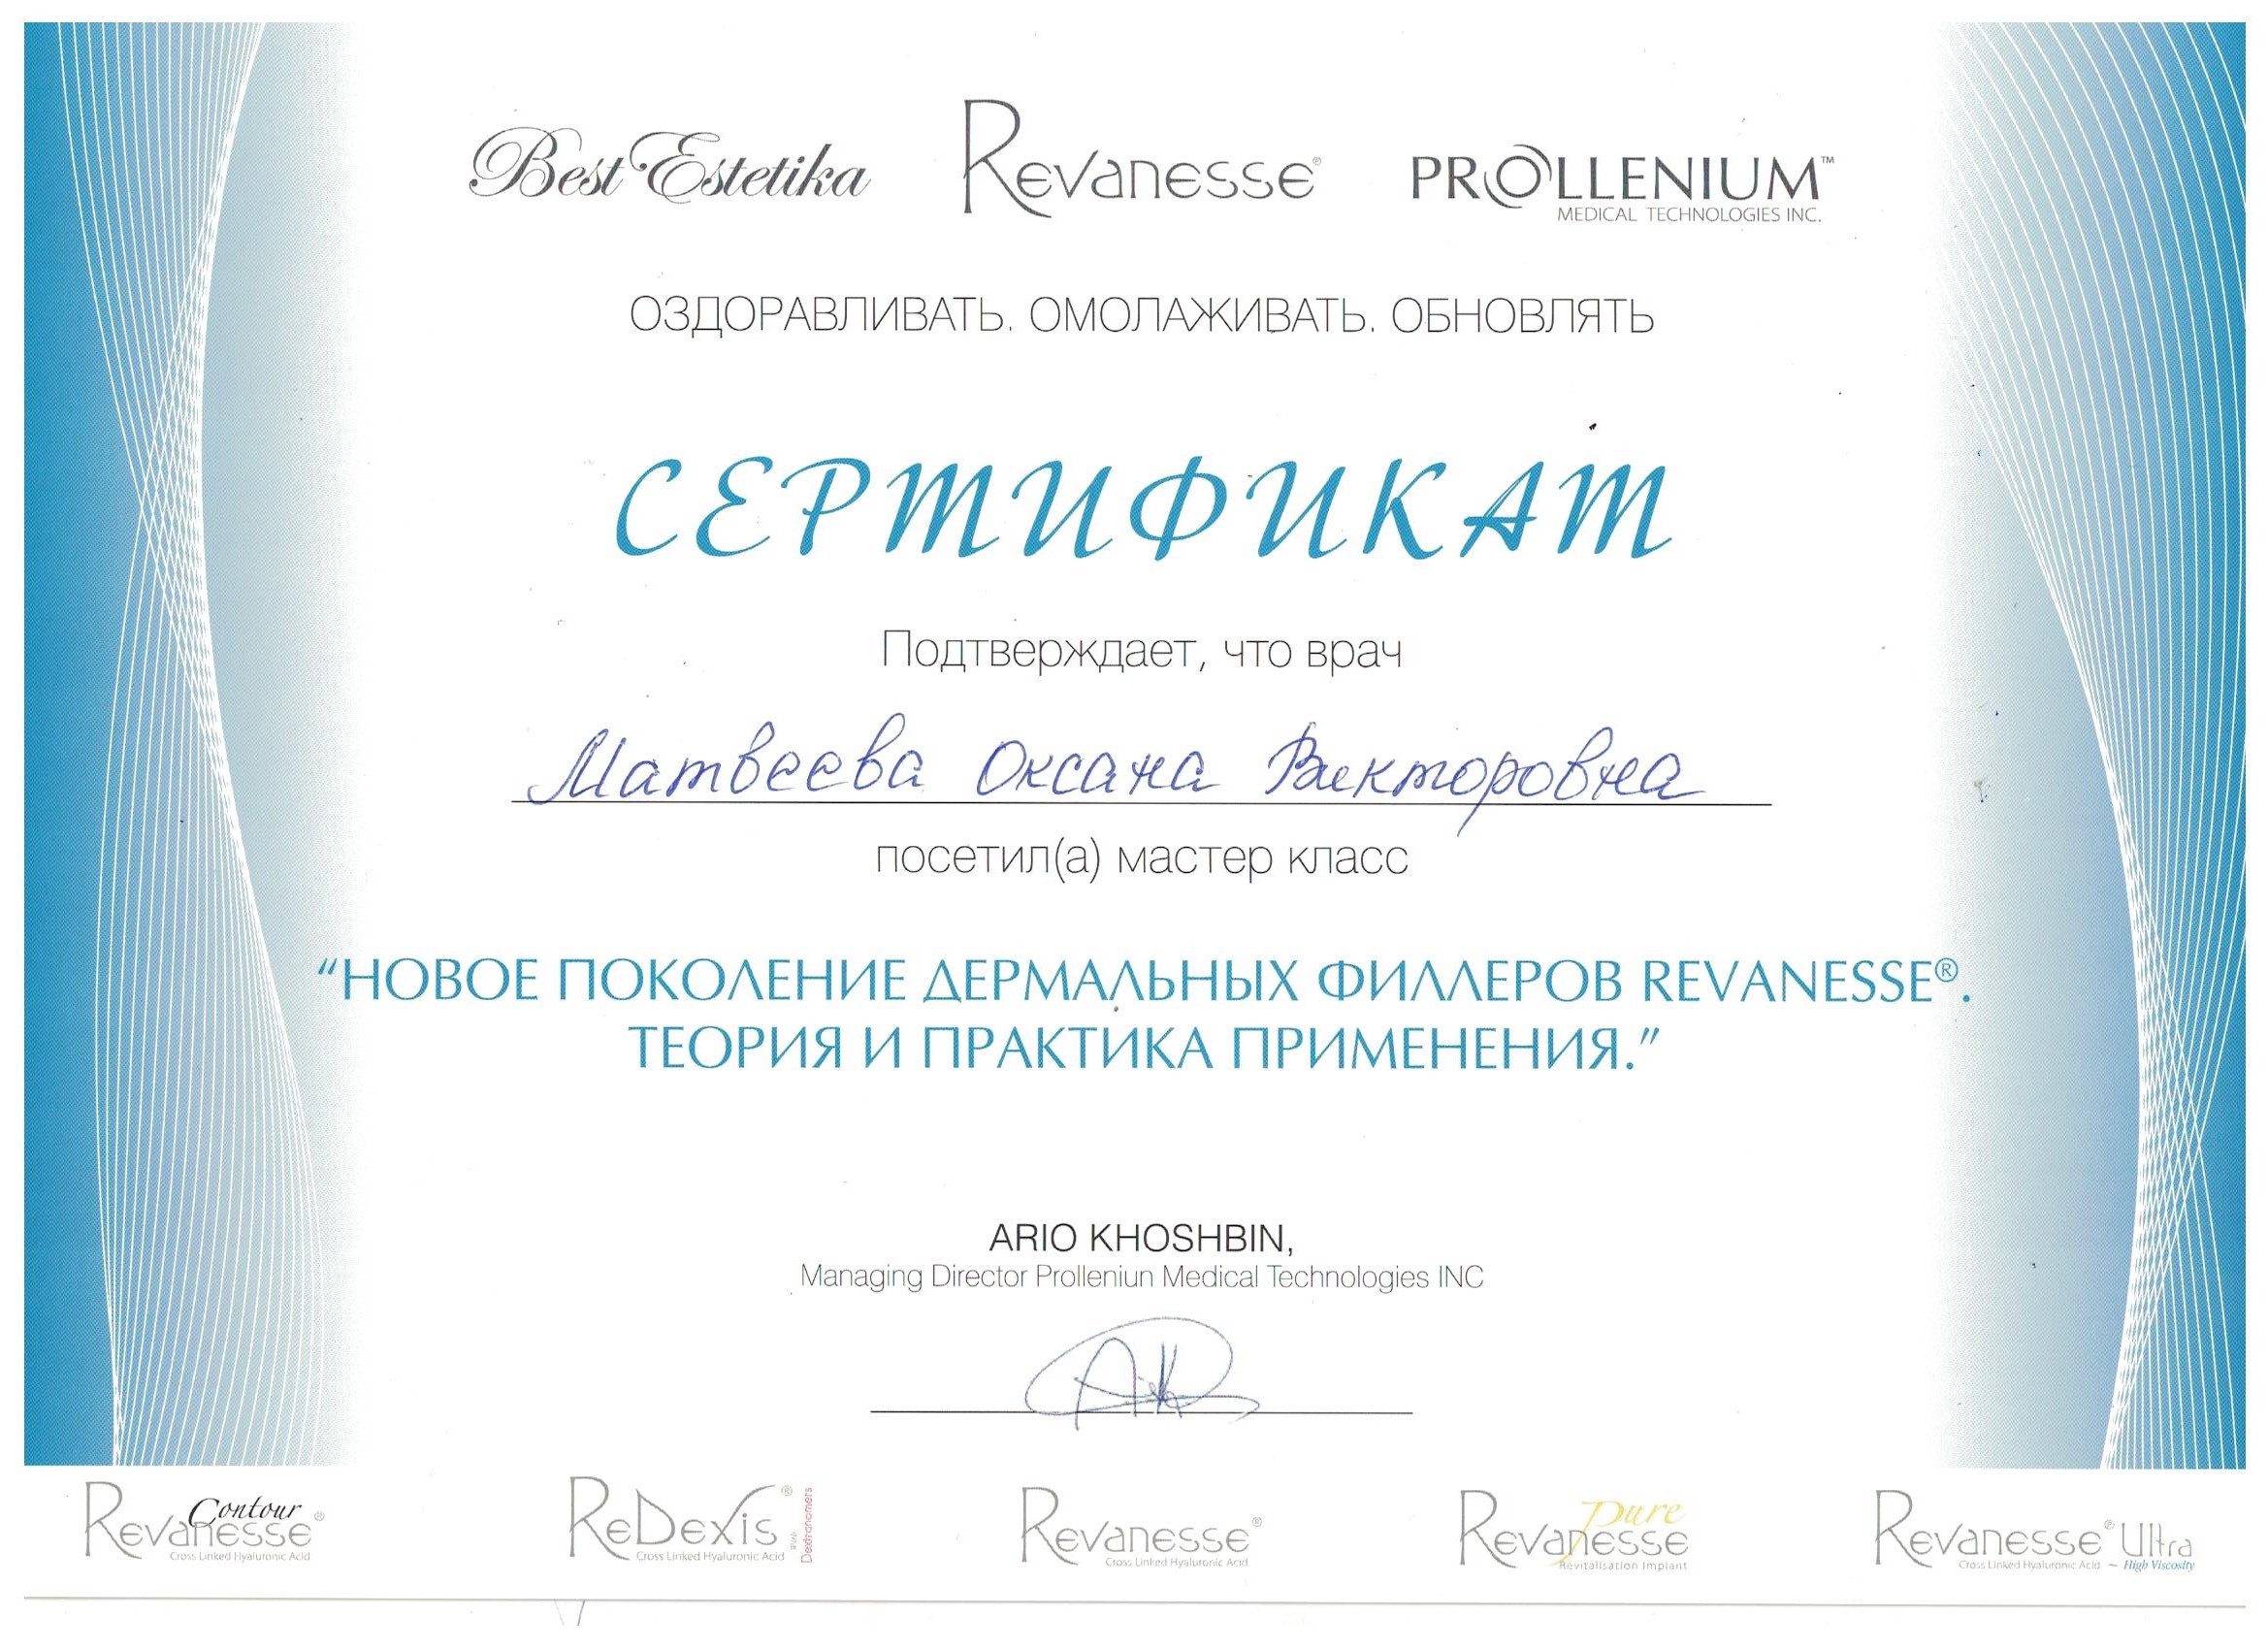 Сертификат Матвеевой Оксаны